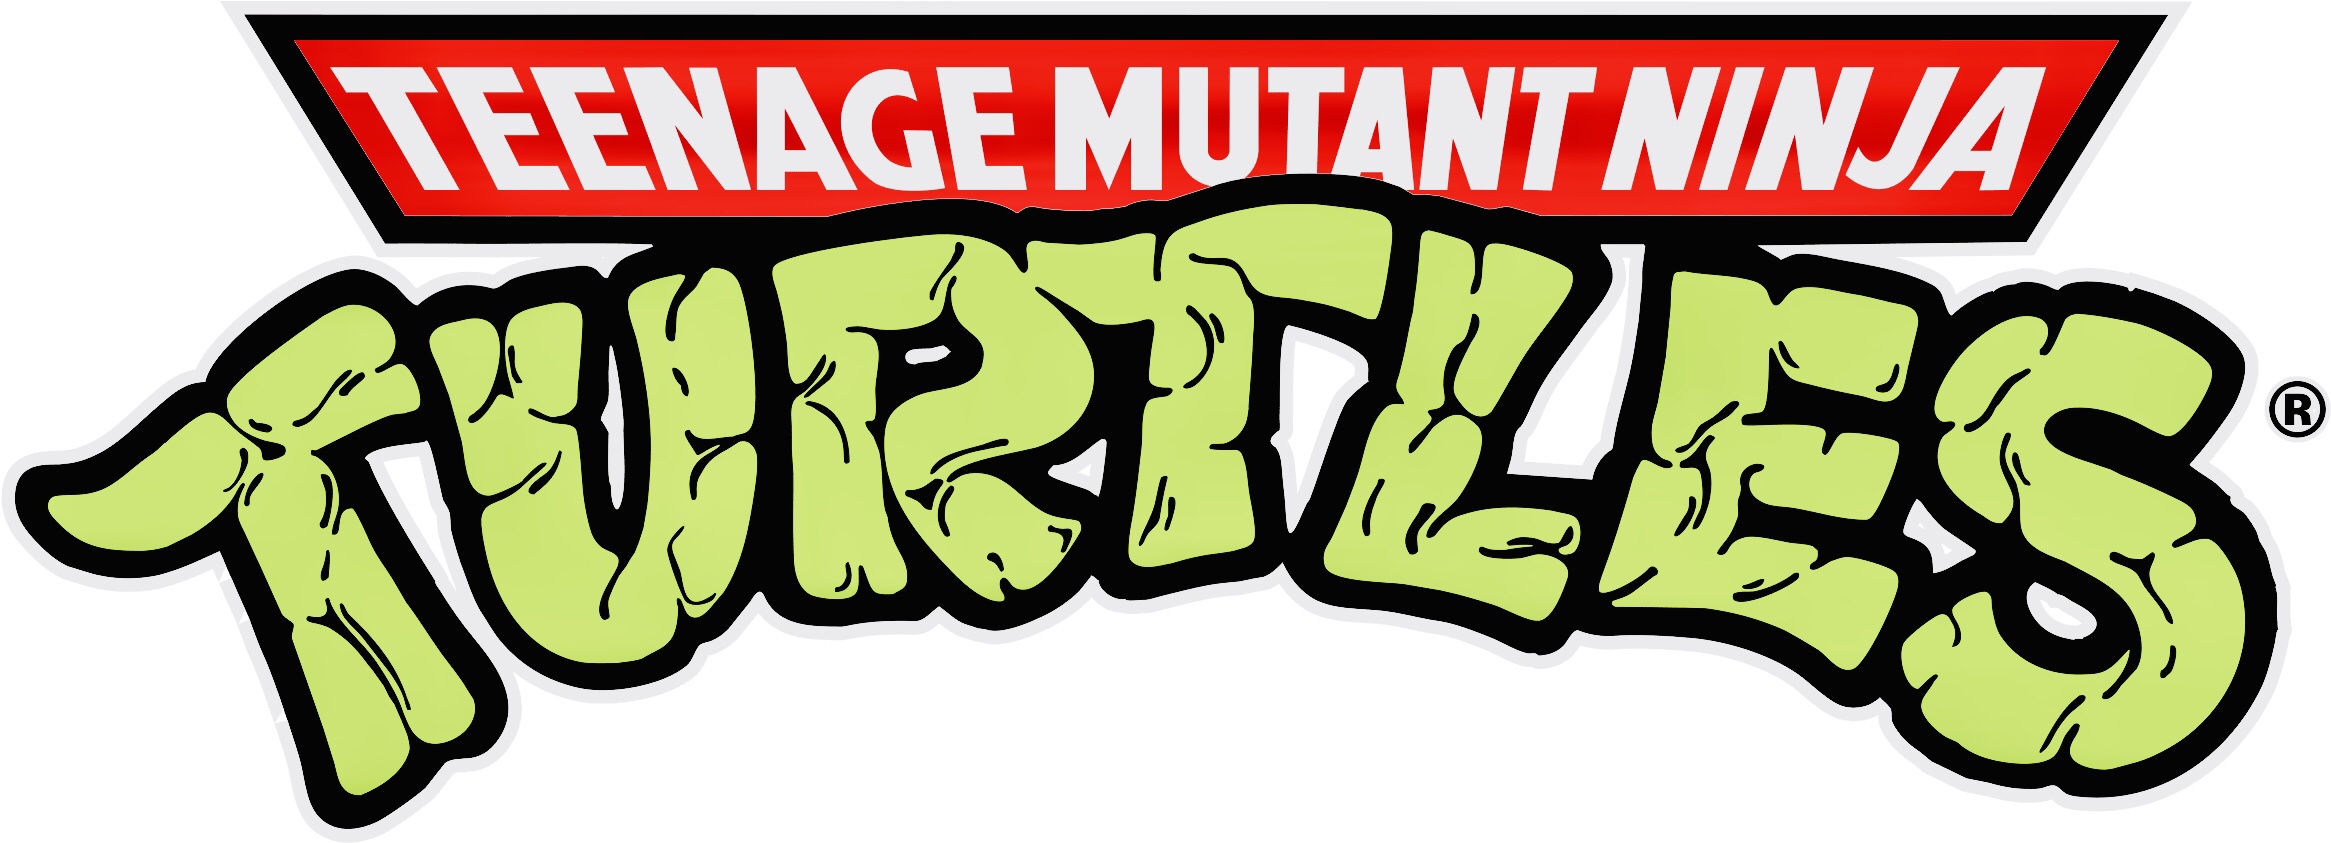 Playmates 2006 – Rat King – Teenage Mutant Ninja Turtles